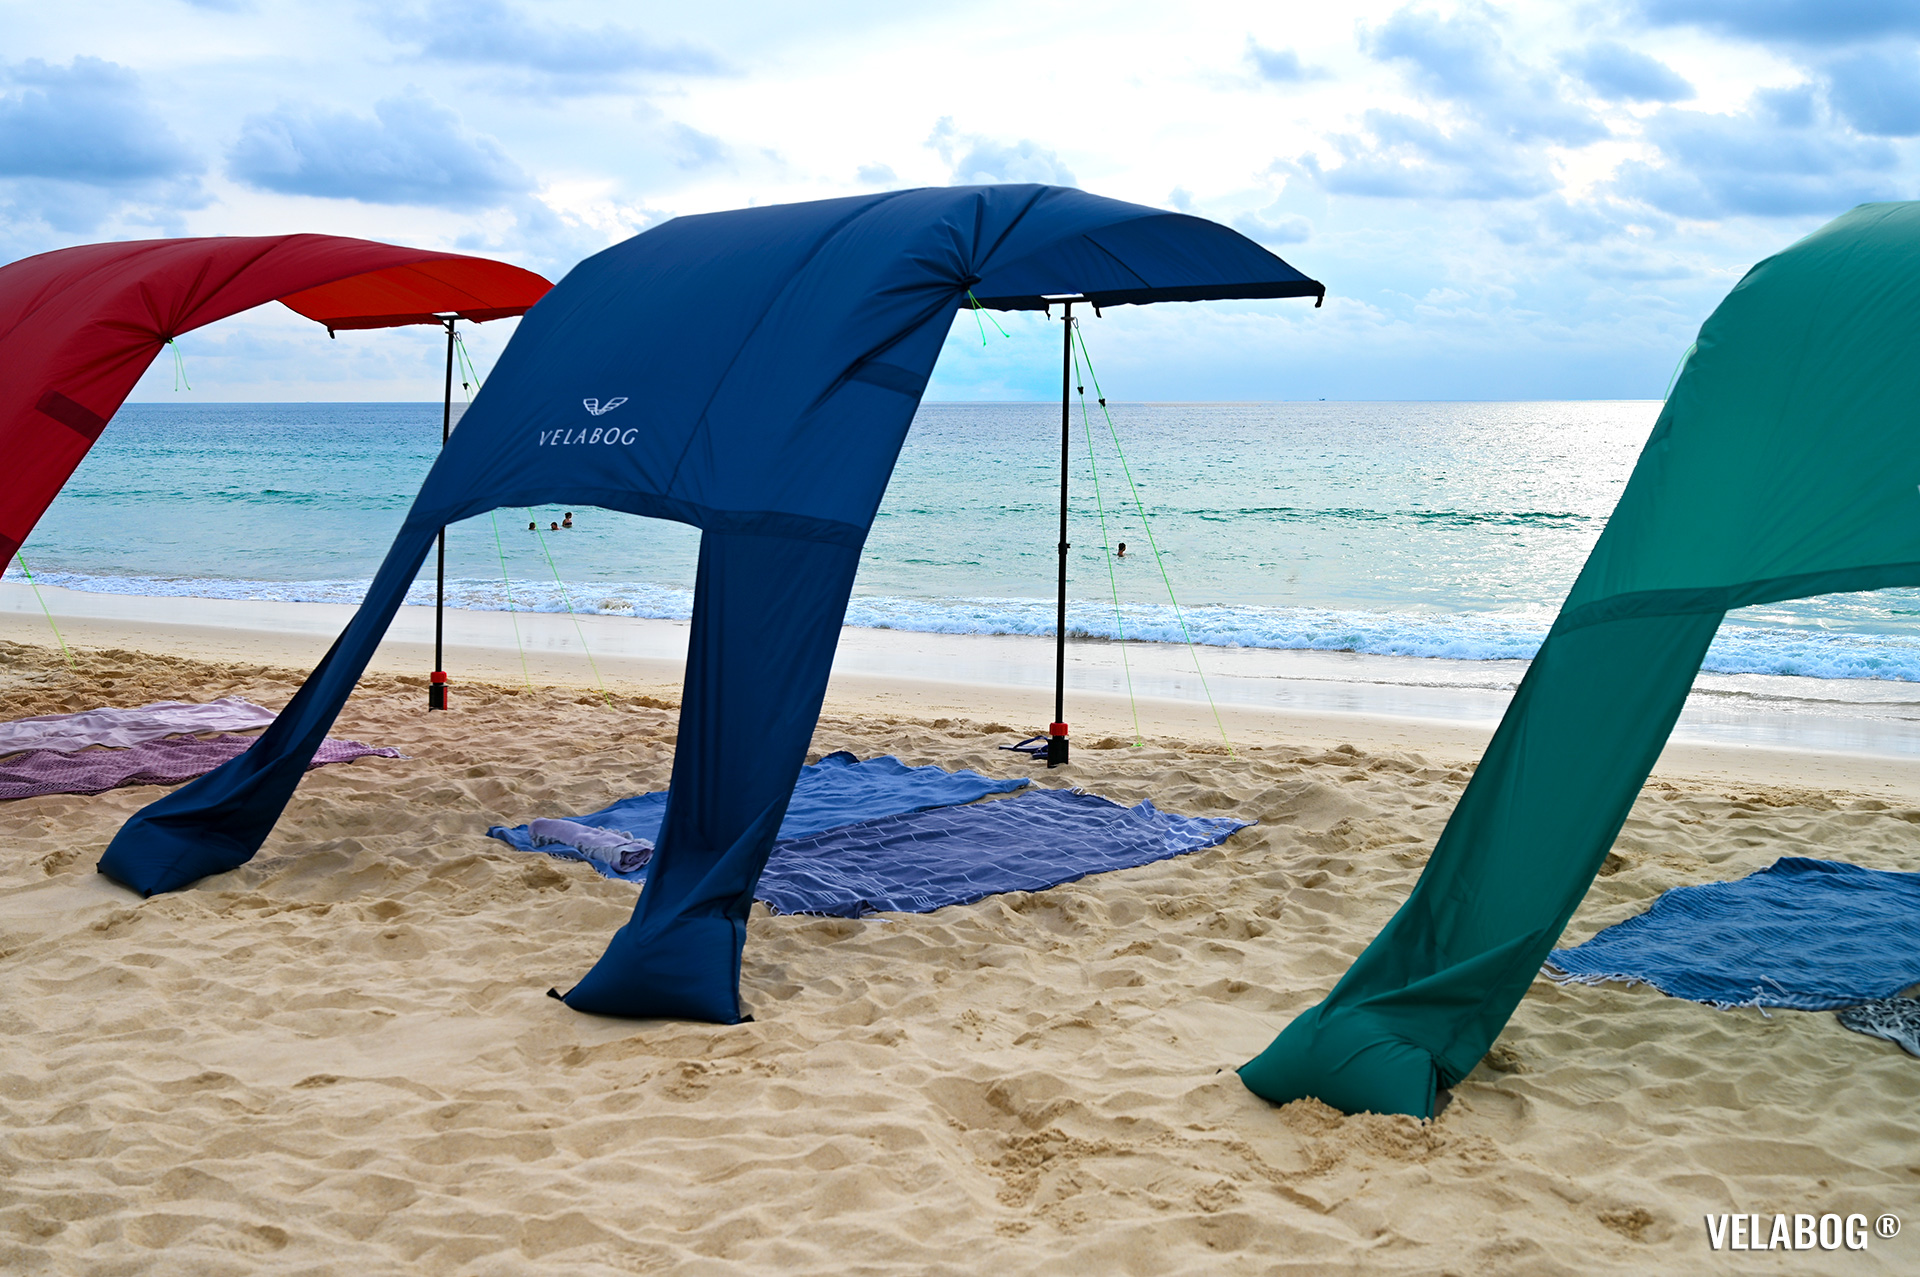 Три солнечных паруса Velabog «Breeze». Лучшее укрытие от солнца на ветренном пляже. Вариант установки при слабом или сильном ветре.